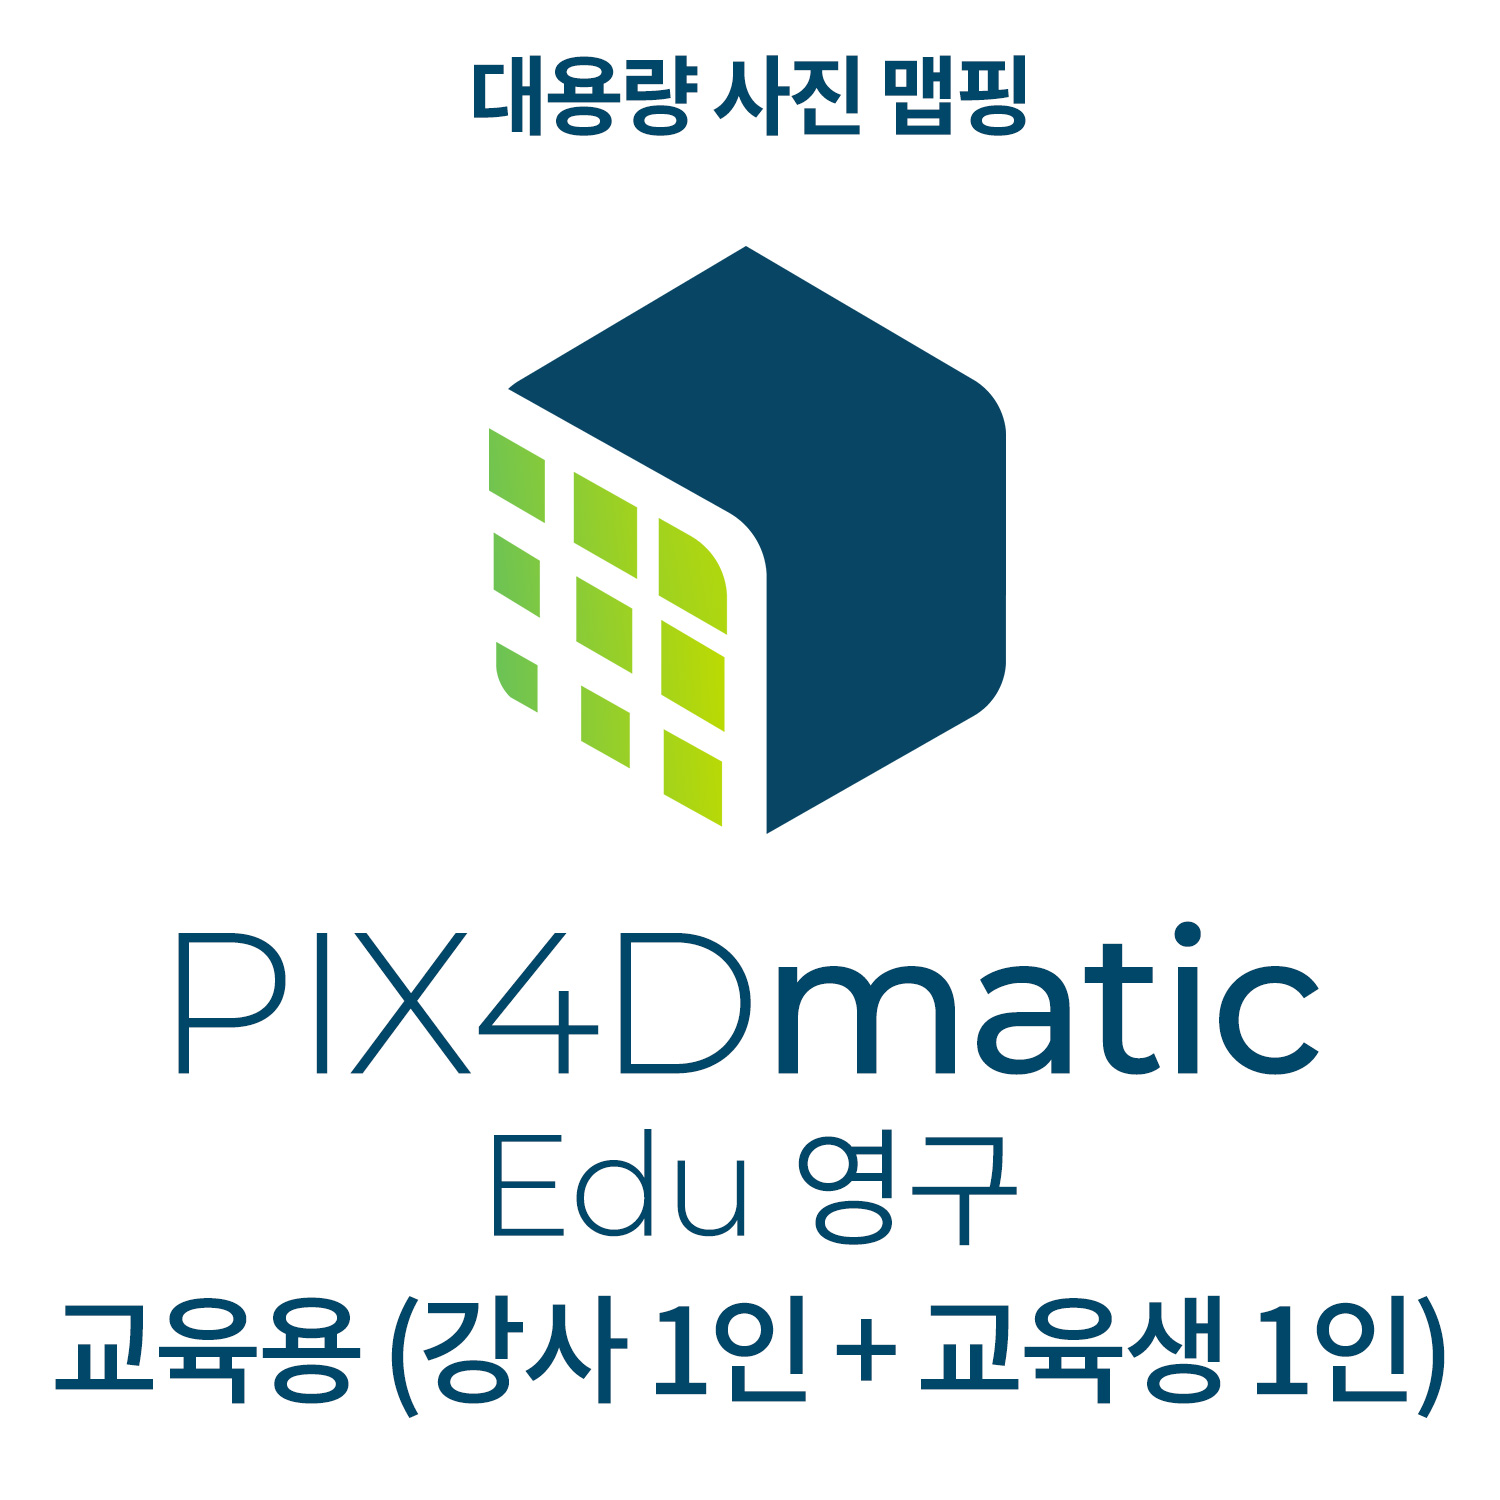 PIX4Dmatic EDU교육기관-학교(강사 1인 + 교육생 1인)(영구소유) 헬셀